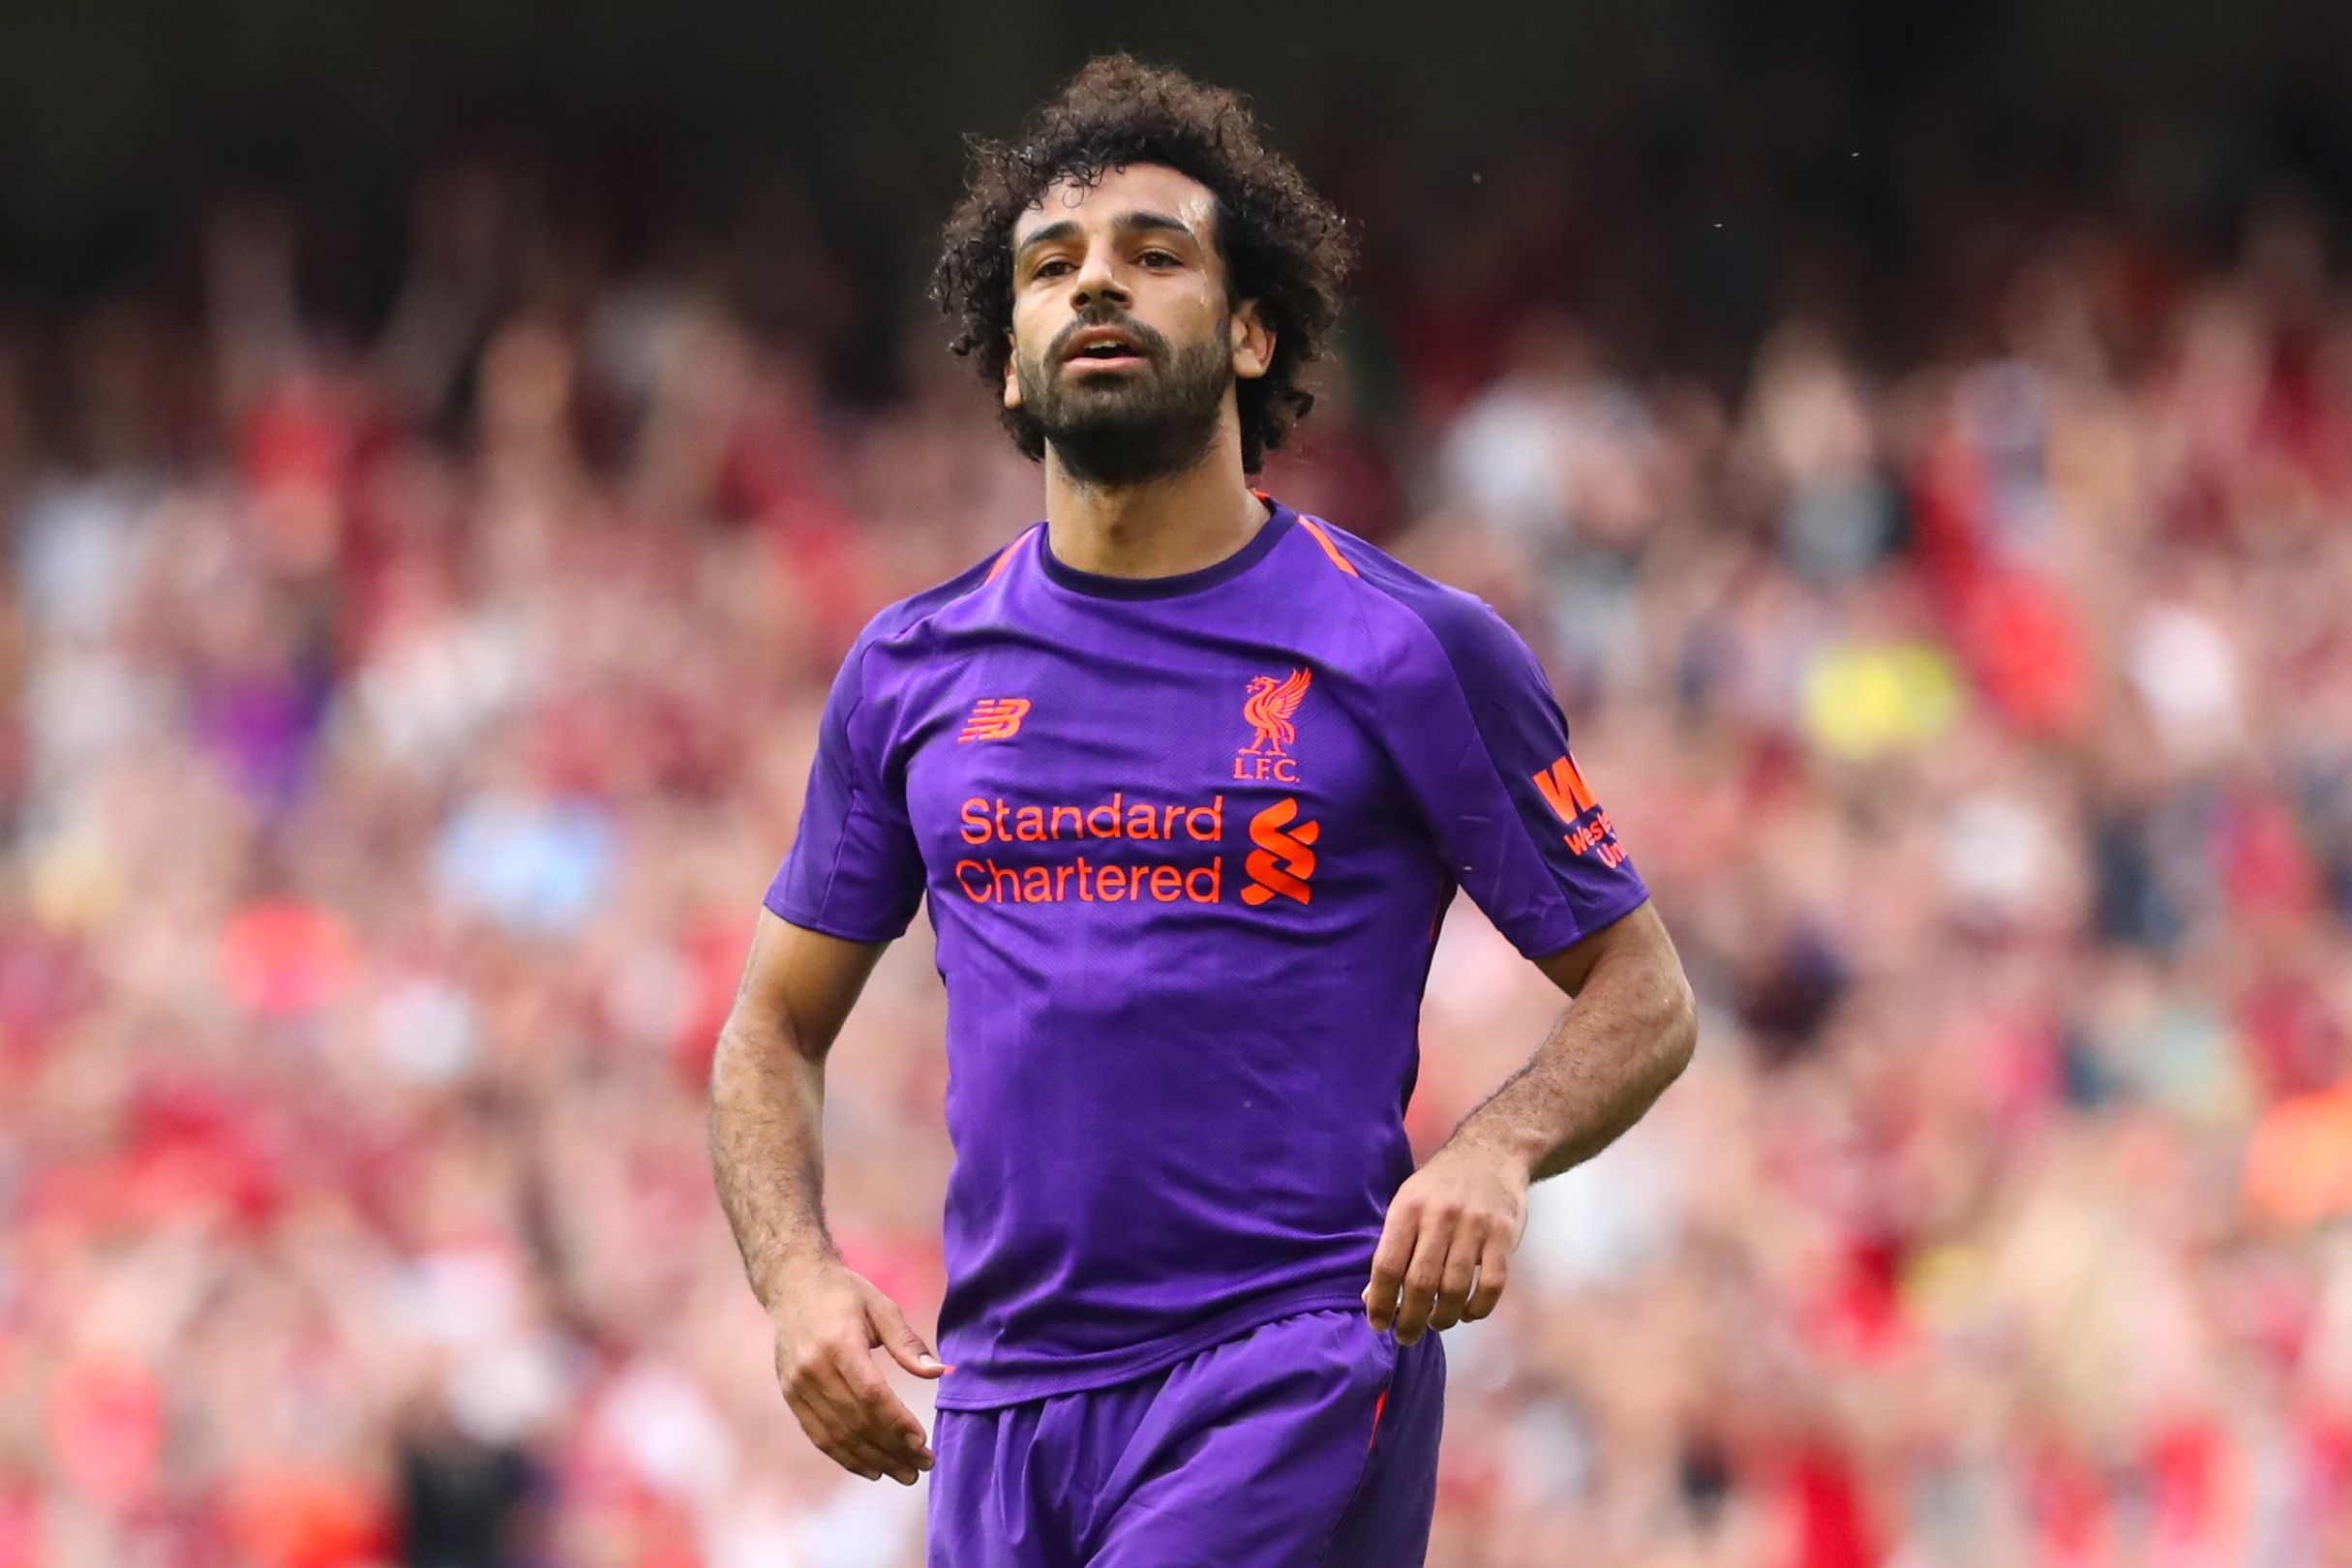 Il semblerait que Mohamed Salah, le joueur de Liverpool, envisage de s’installer en Arabie saoudite pour 200 millions de livres, tout en retardant son association avec l’Égypte.